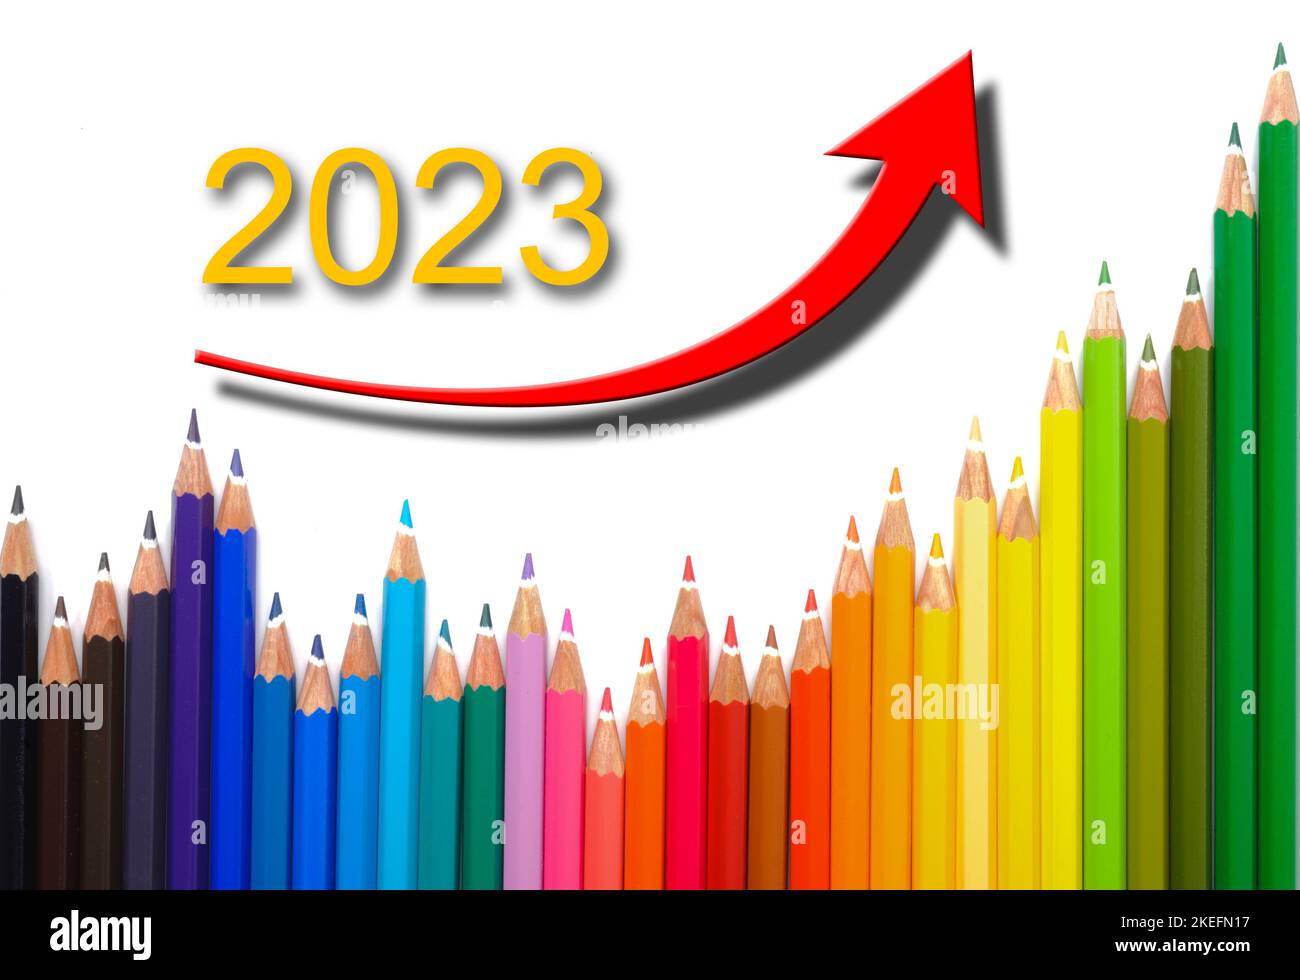 Silvester und Neujahr 2022/2023 Foto Stock